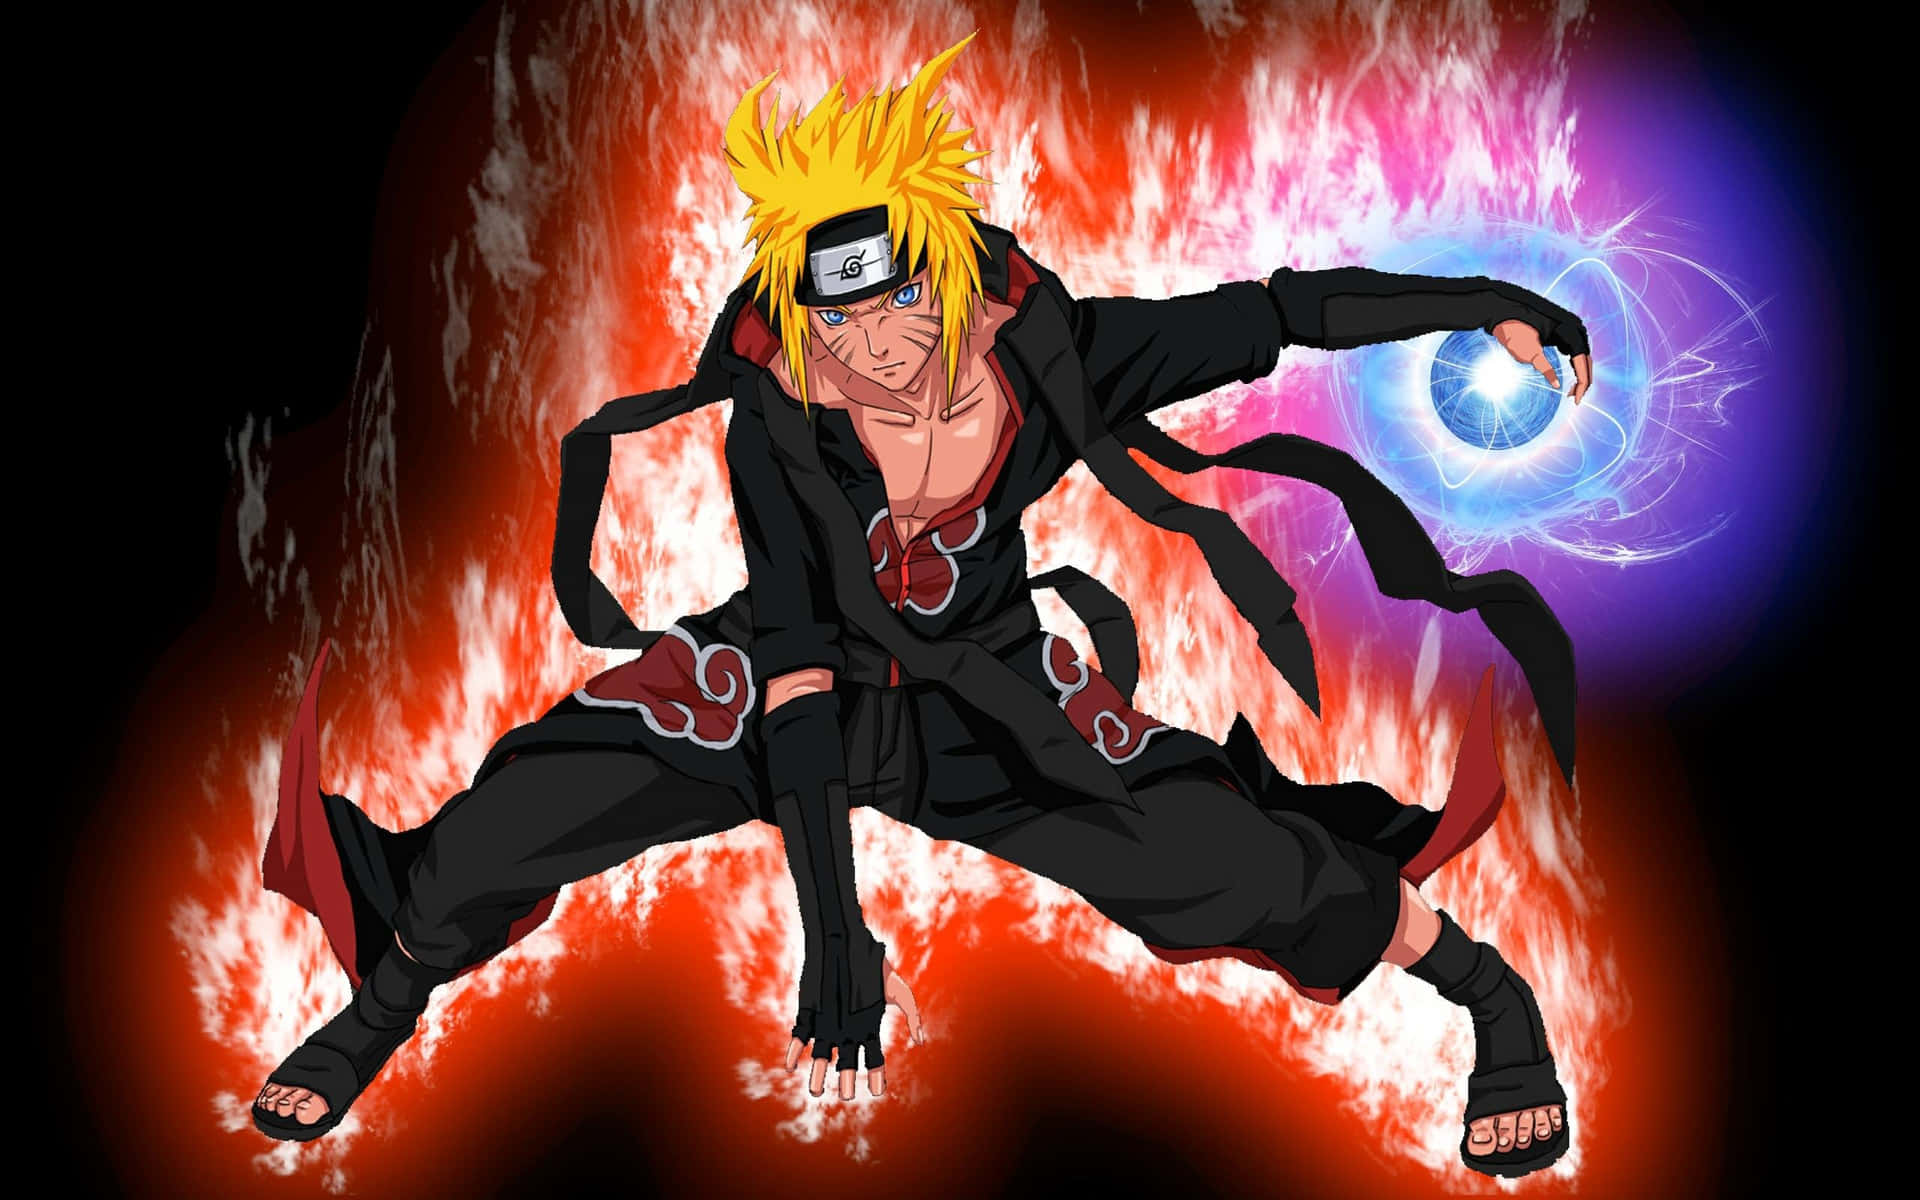 Naruto: Cùng đắm chìm trong thế giới ninja tuyệt vời nhất của Naruto, với những kỹ năng và thủ thuật đỉnh cao, những cuộc chiến đầy kịch tính và những mối quan hệ đặc biệt giữa các nhân vật. Hình ảnh đẹp lung linh sẽ giúp bạn trải nghiệm một cách đầy đủ về cuộc phiêu lưu của Naruto.